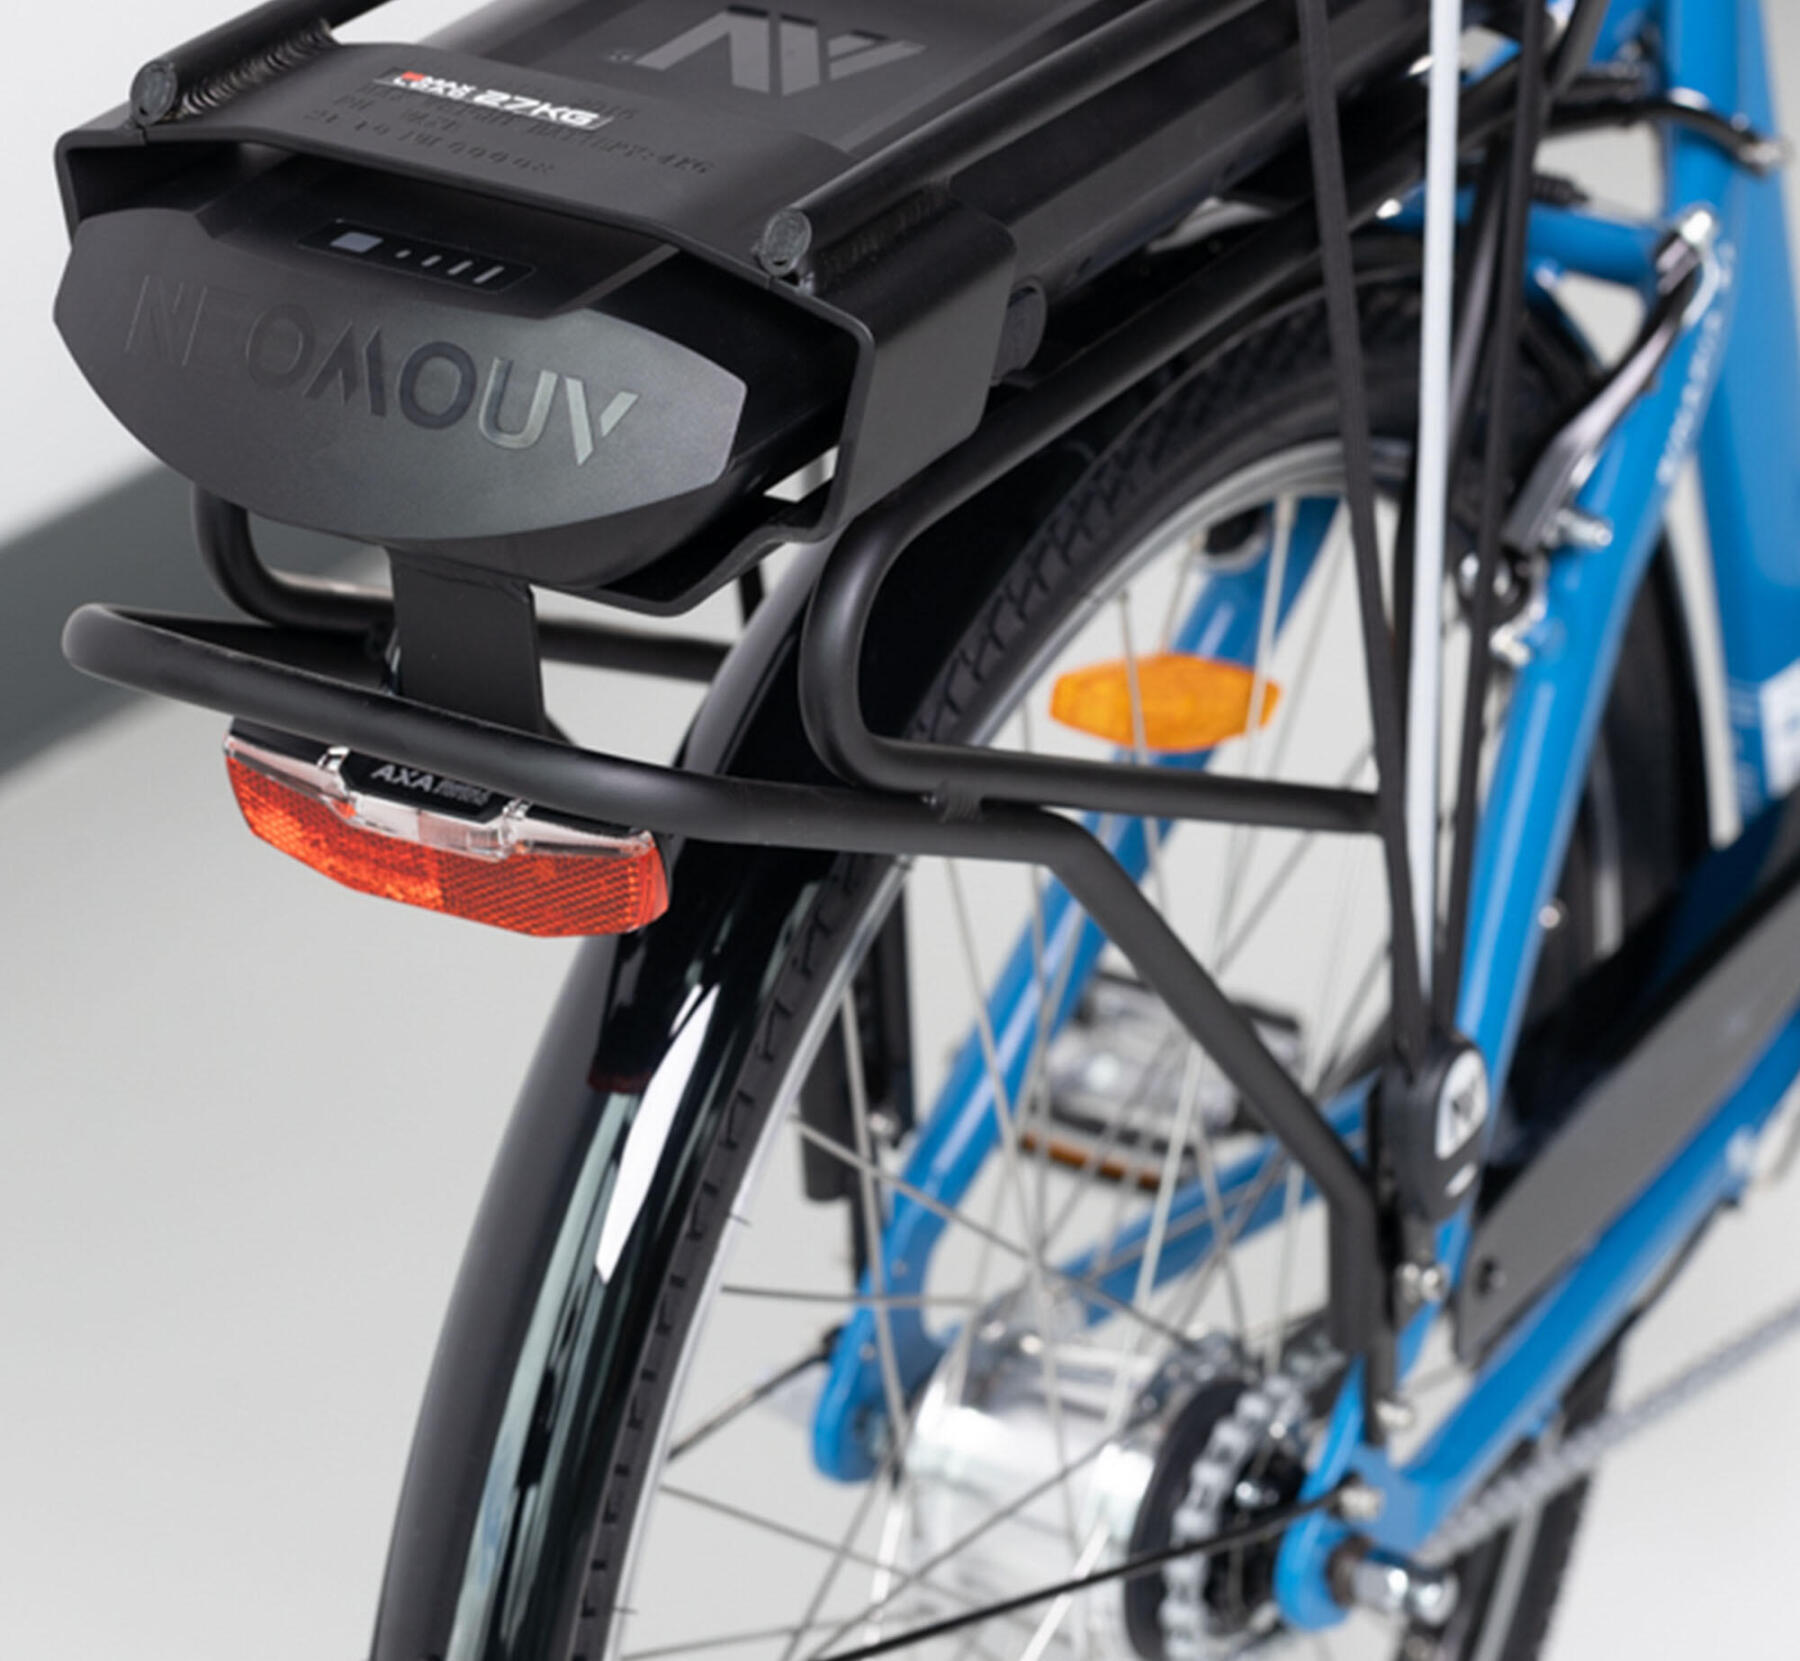 Comment optimiser la batterie de vélo à assistance électrique (VAE) ?